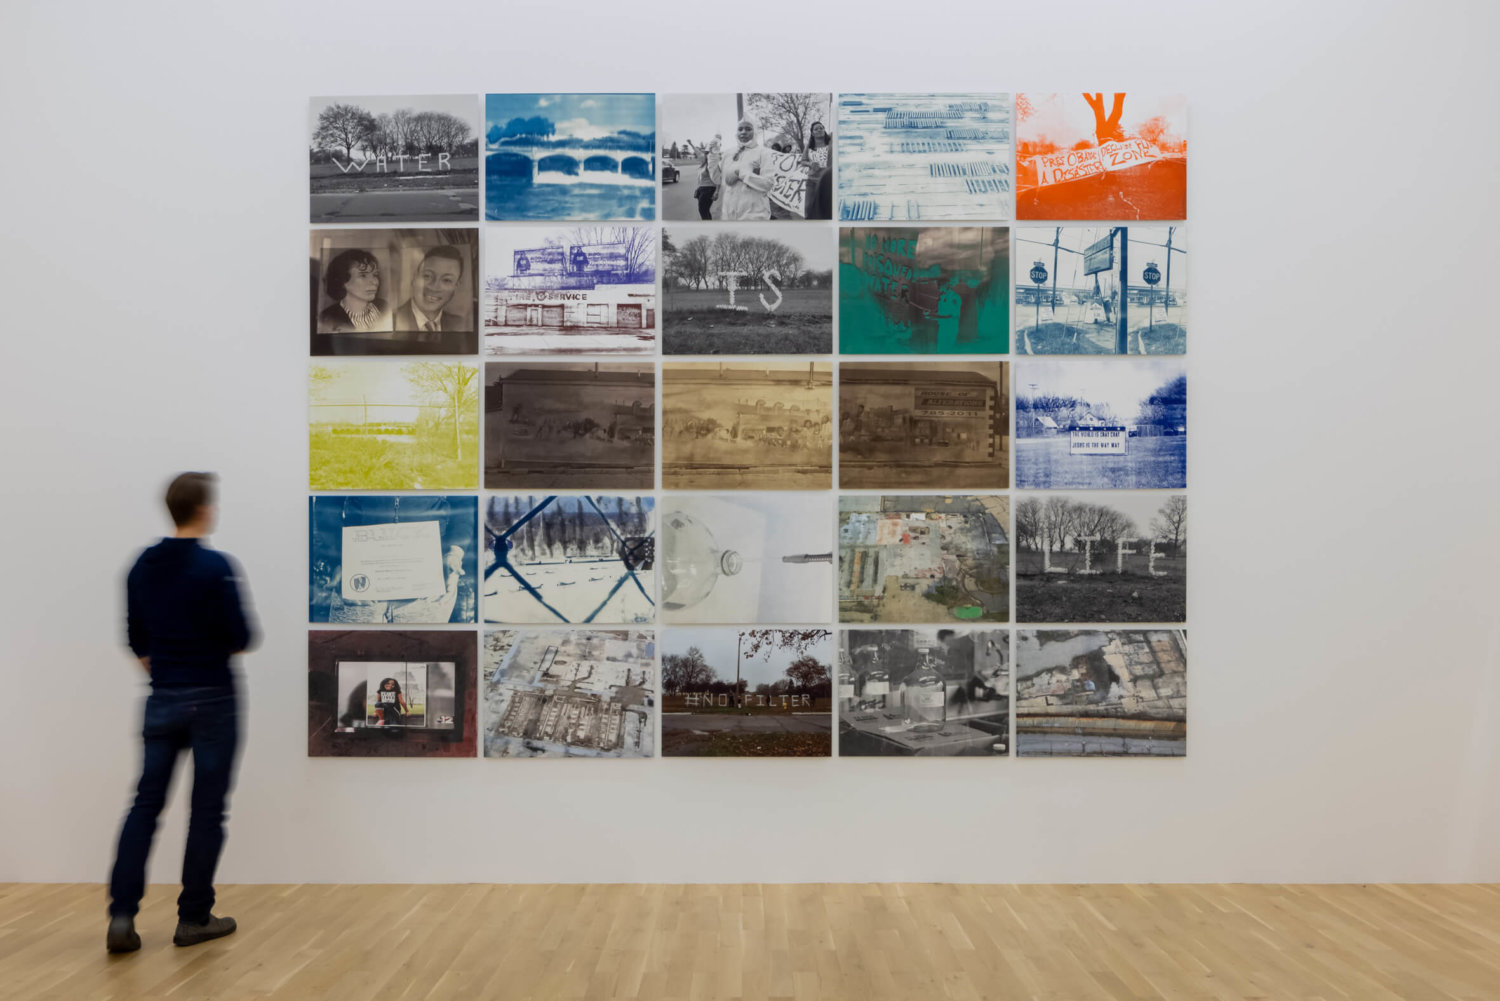 Ausstellungsansicht im Kunstmuseum Wolfsburg, ein Besucher steht vor einer weißen Ausstellungswand mit 25 Fotografien zum Thema Wasser